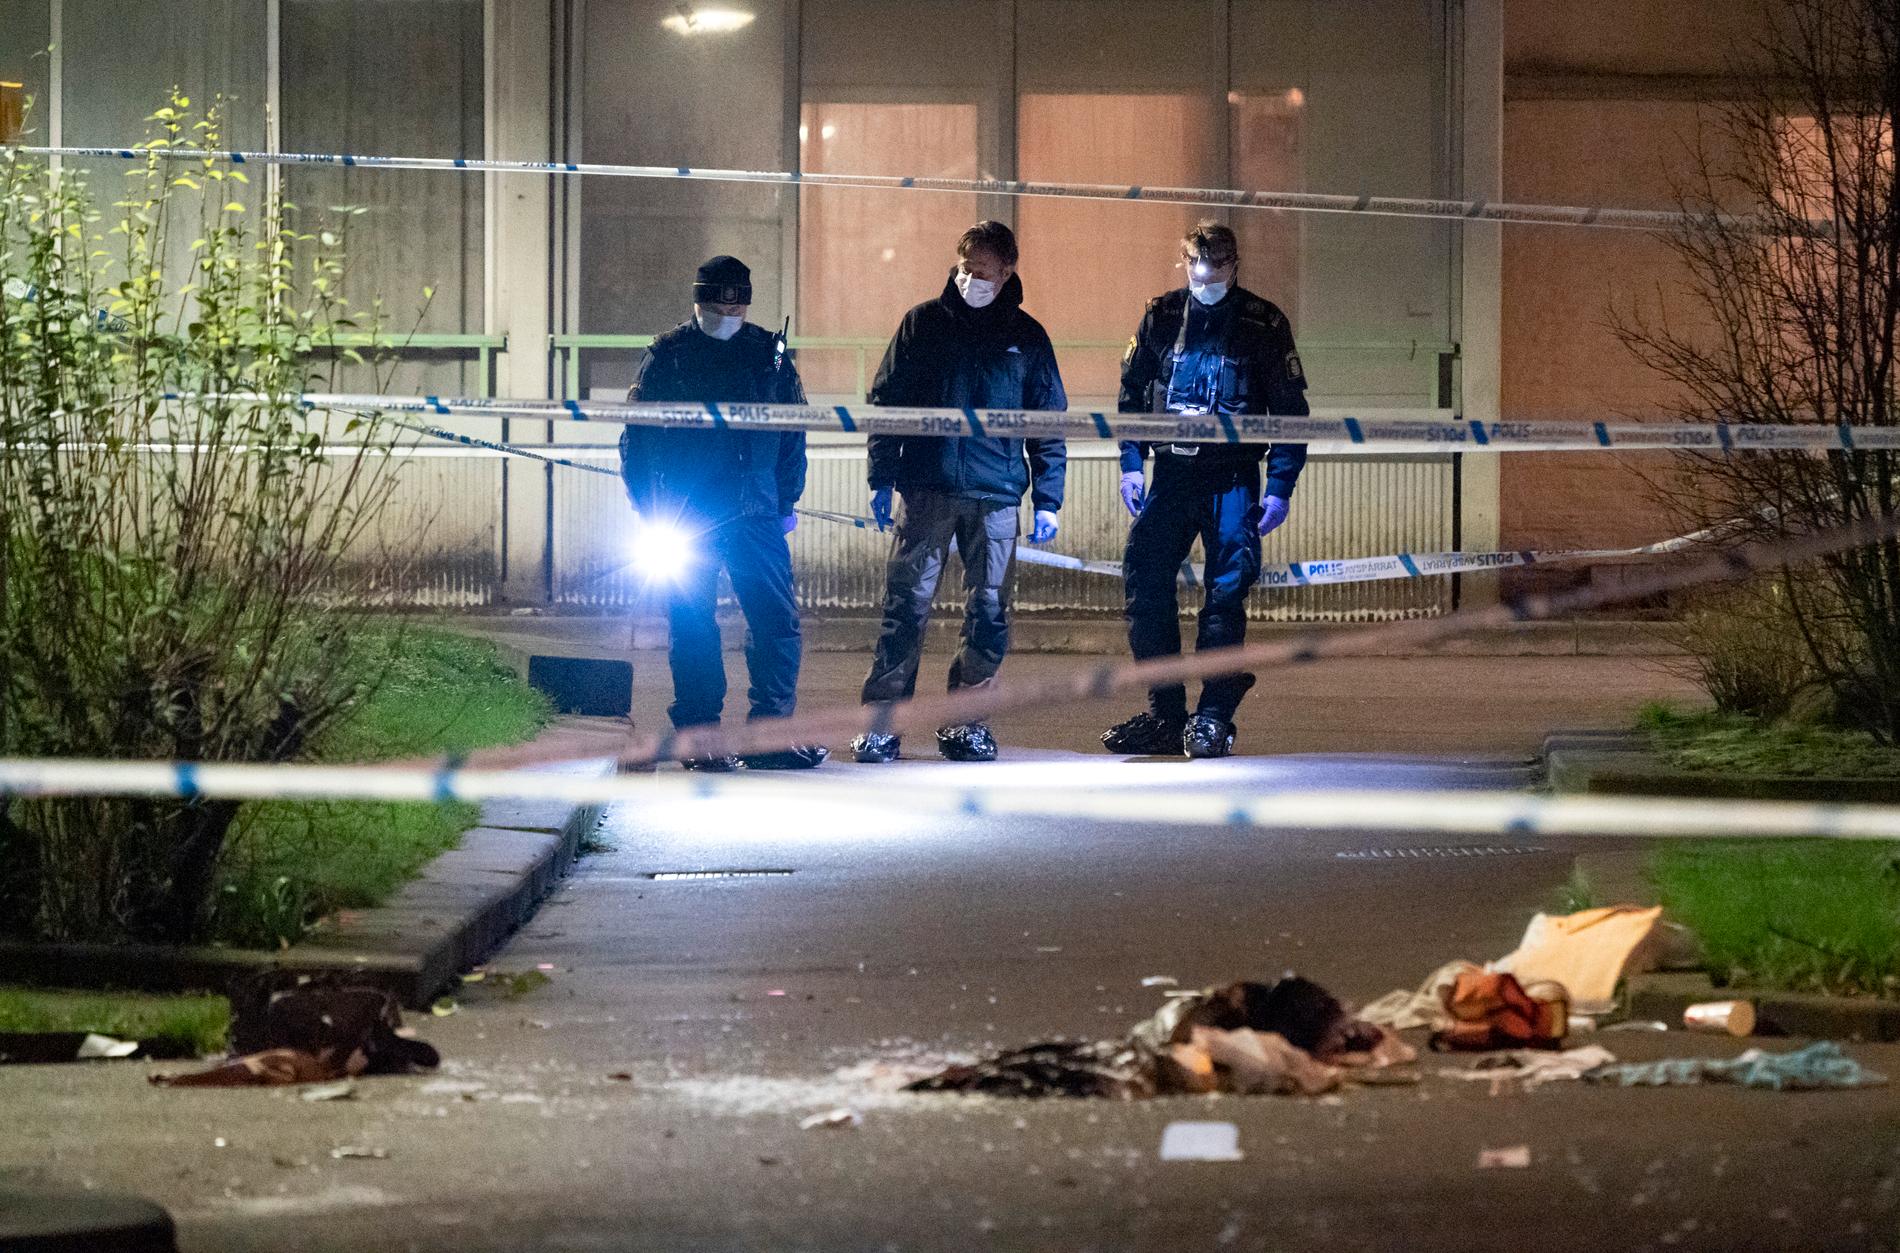 Polisens kriminaltekniker på plats efter att en person har förts till sjukhus efter en skottlossning i Malmö i torsdags. Nu har en 15-åring häktats som misstänkt för mordförsök. Arkivbild.